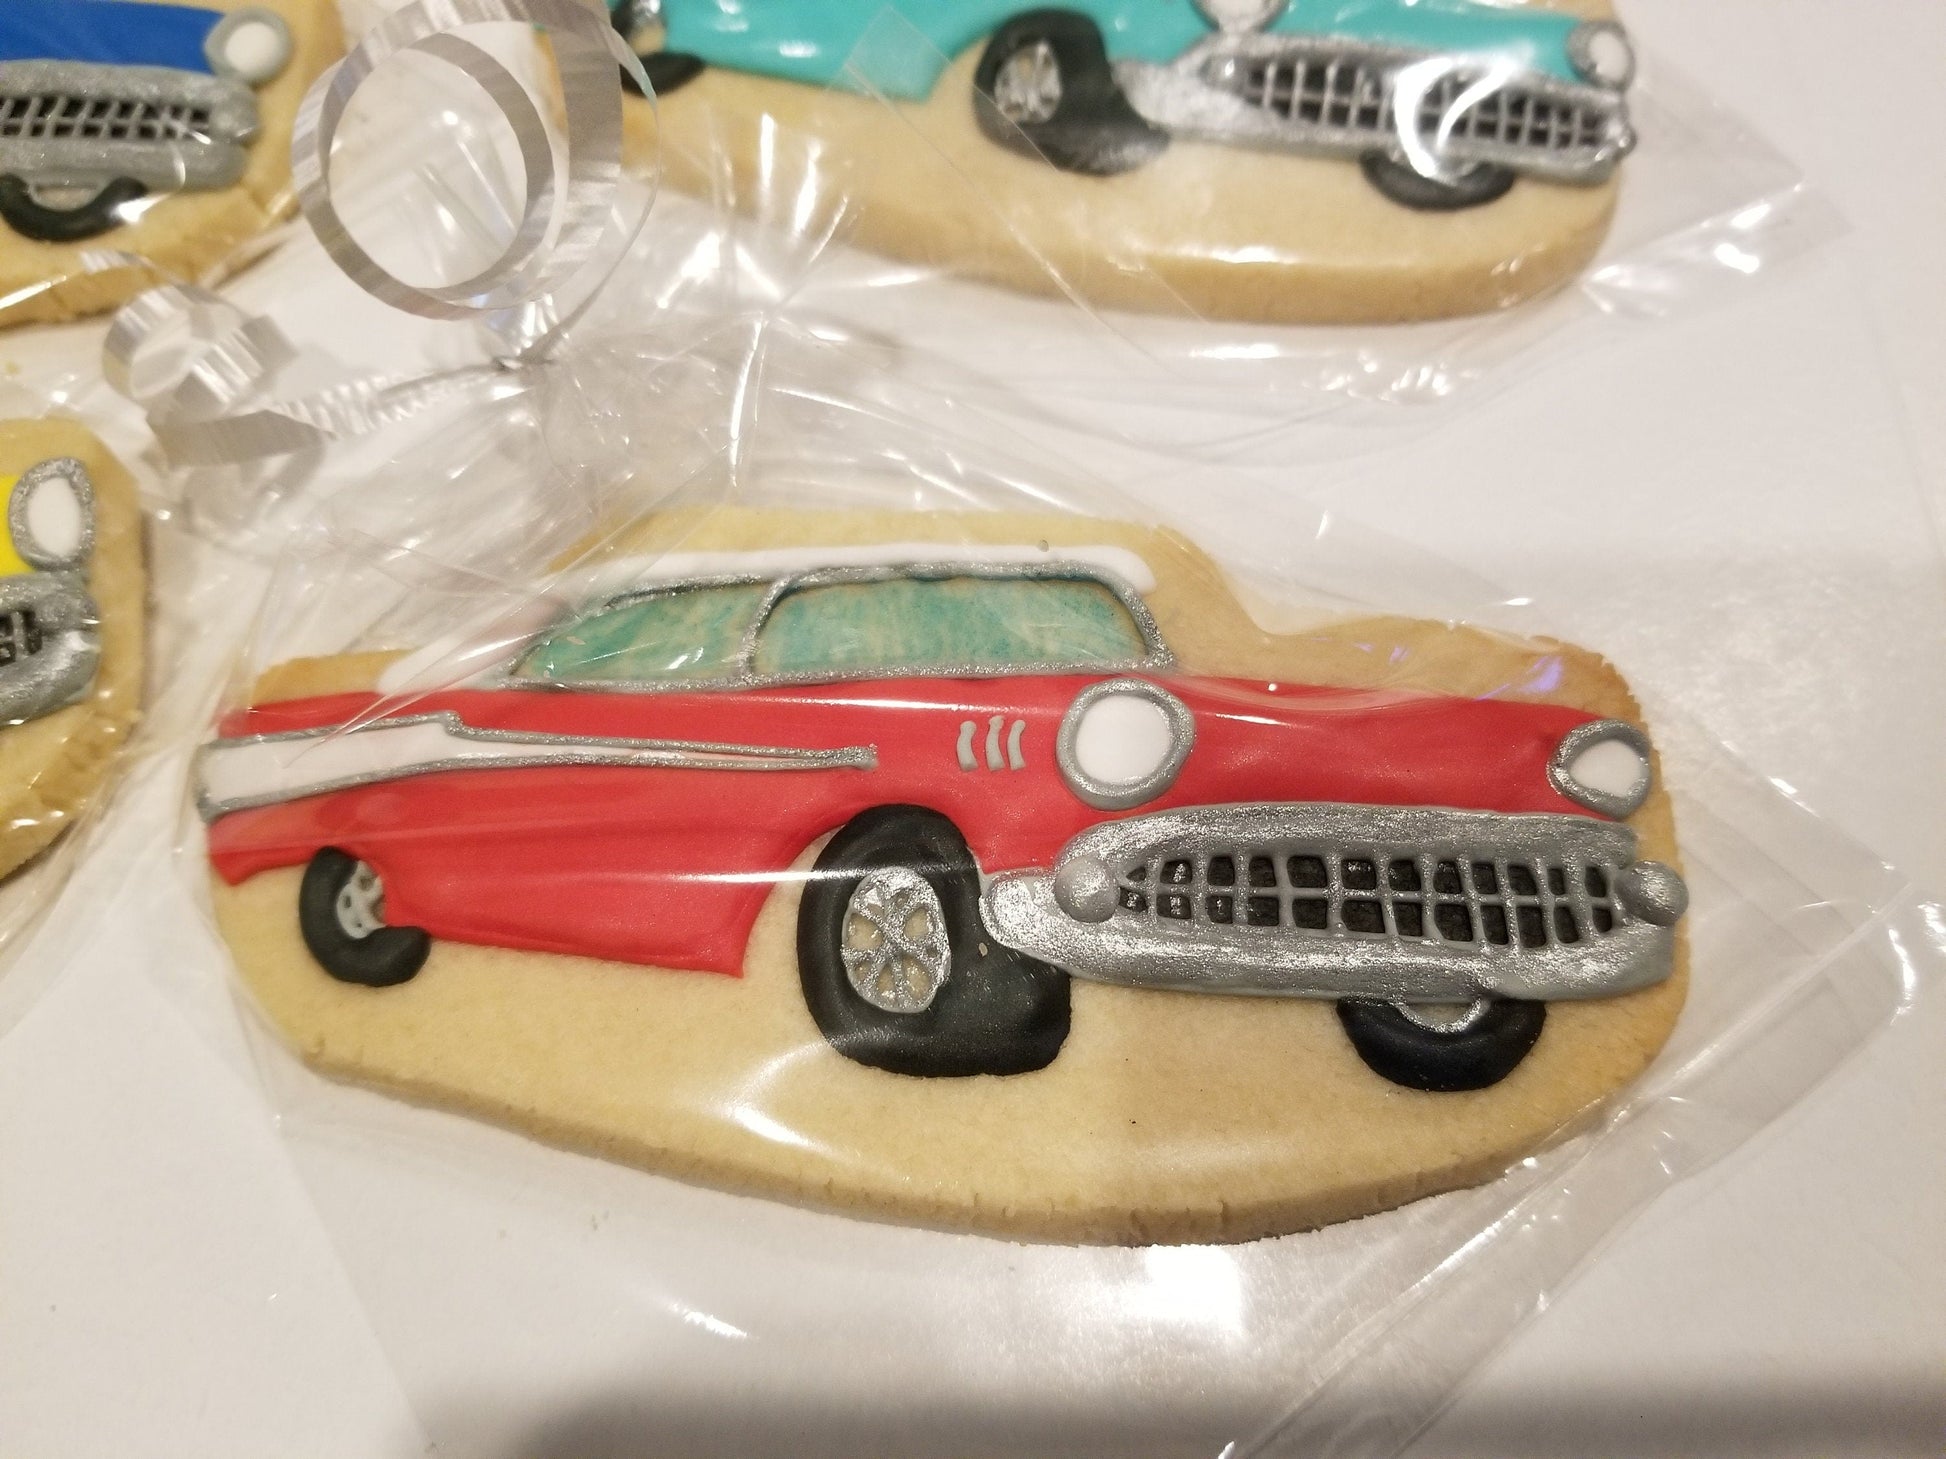 Antique Cars One Dozen (12) - Ladybug bake shop